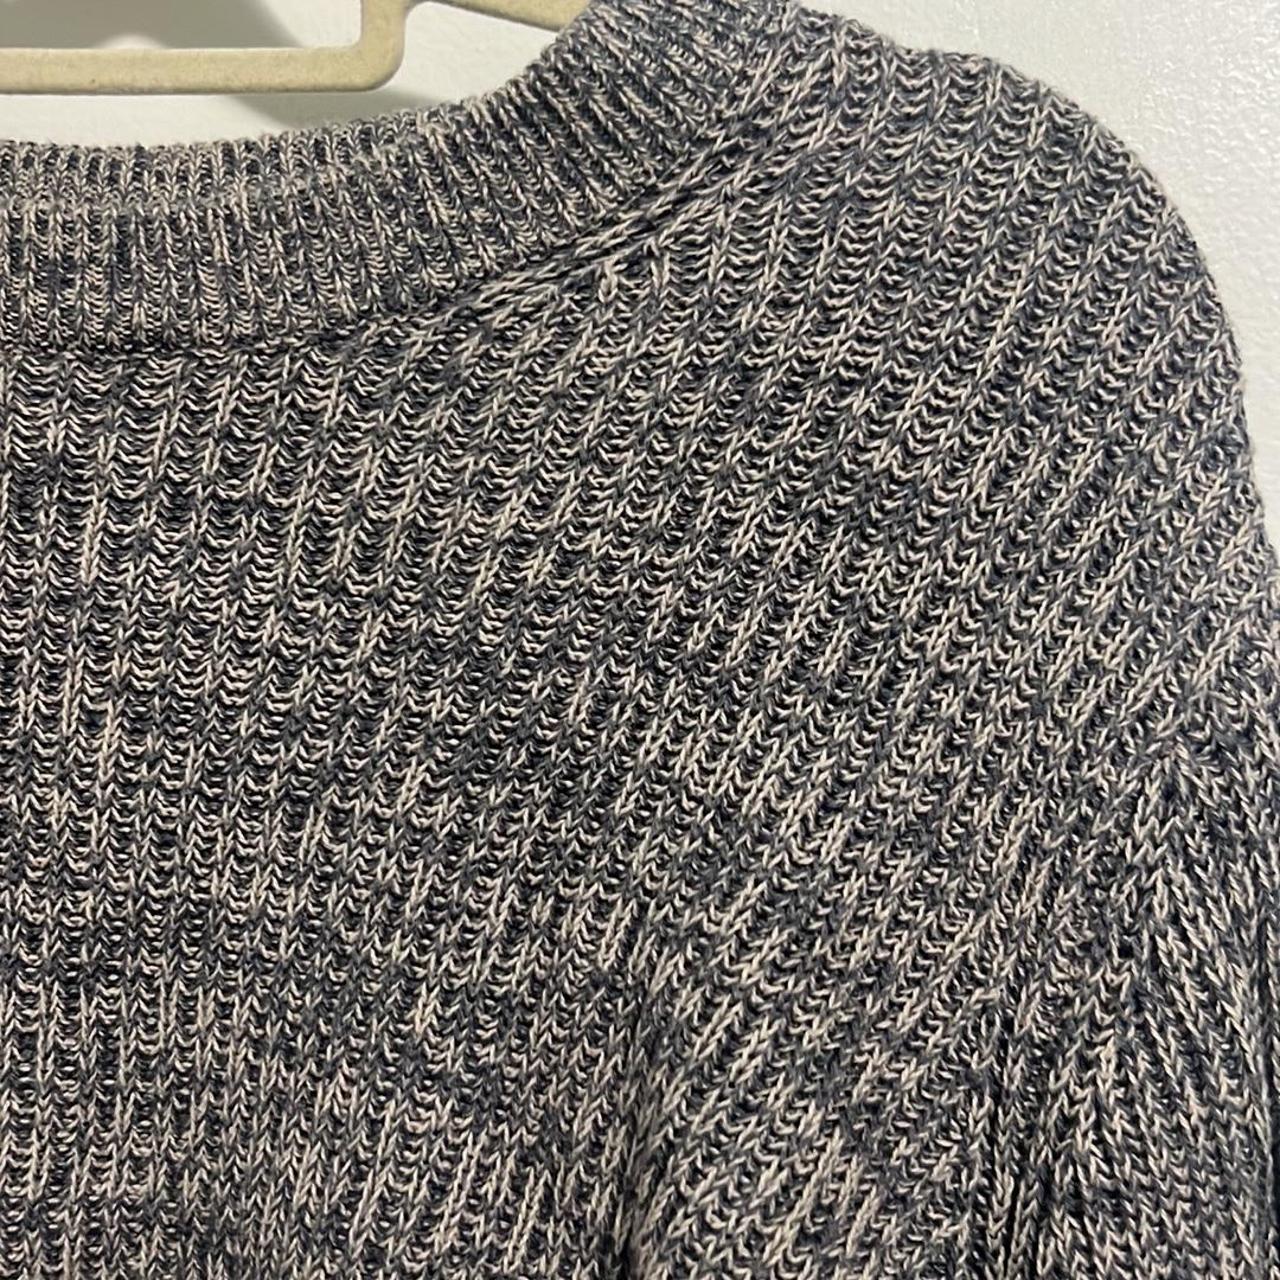 Cotton On knitwear sweater - Depop